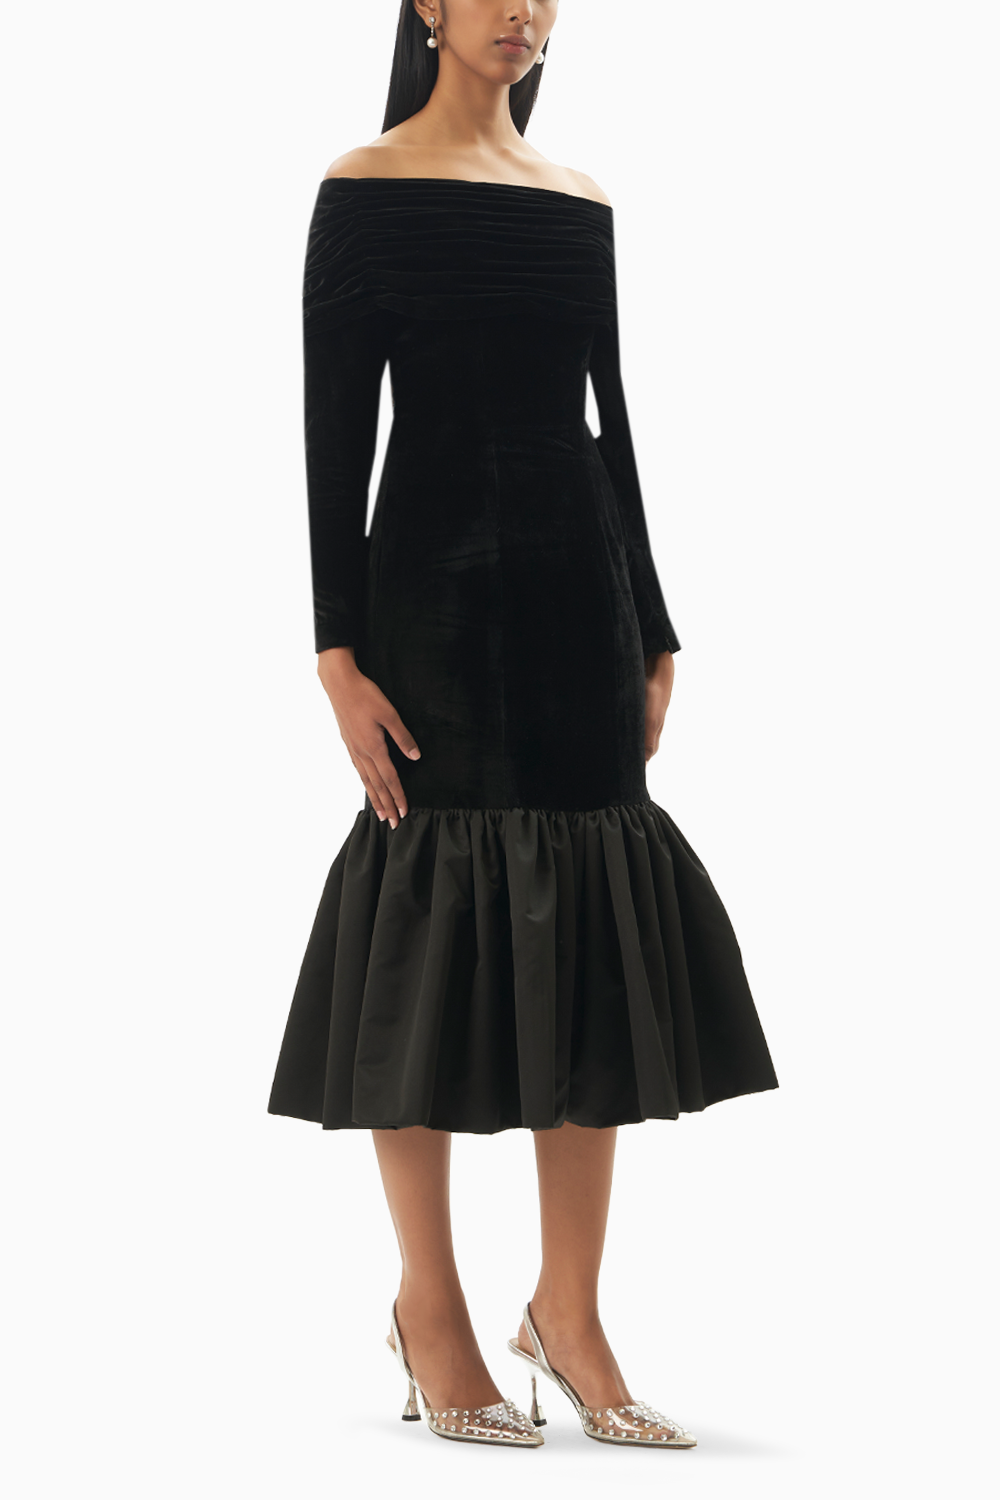 Black Chic Ruffle Velvet Noir Dress